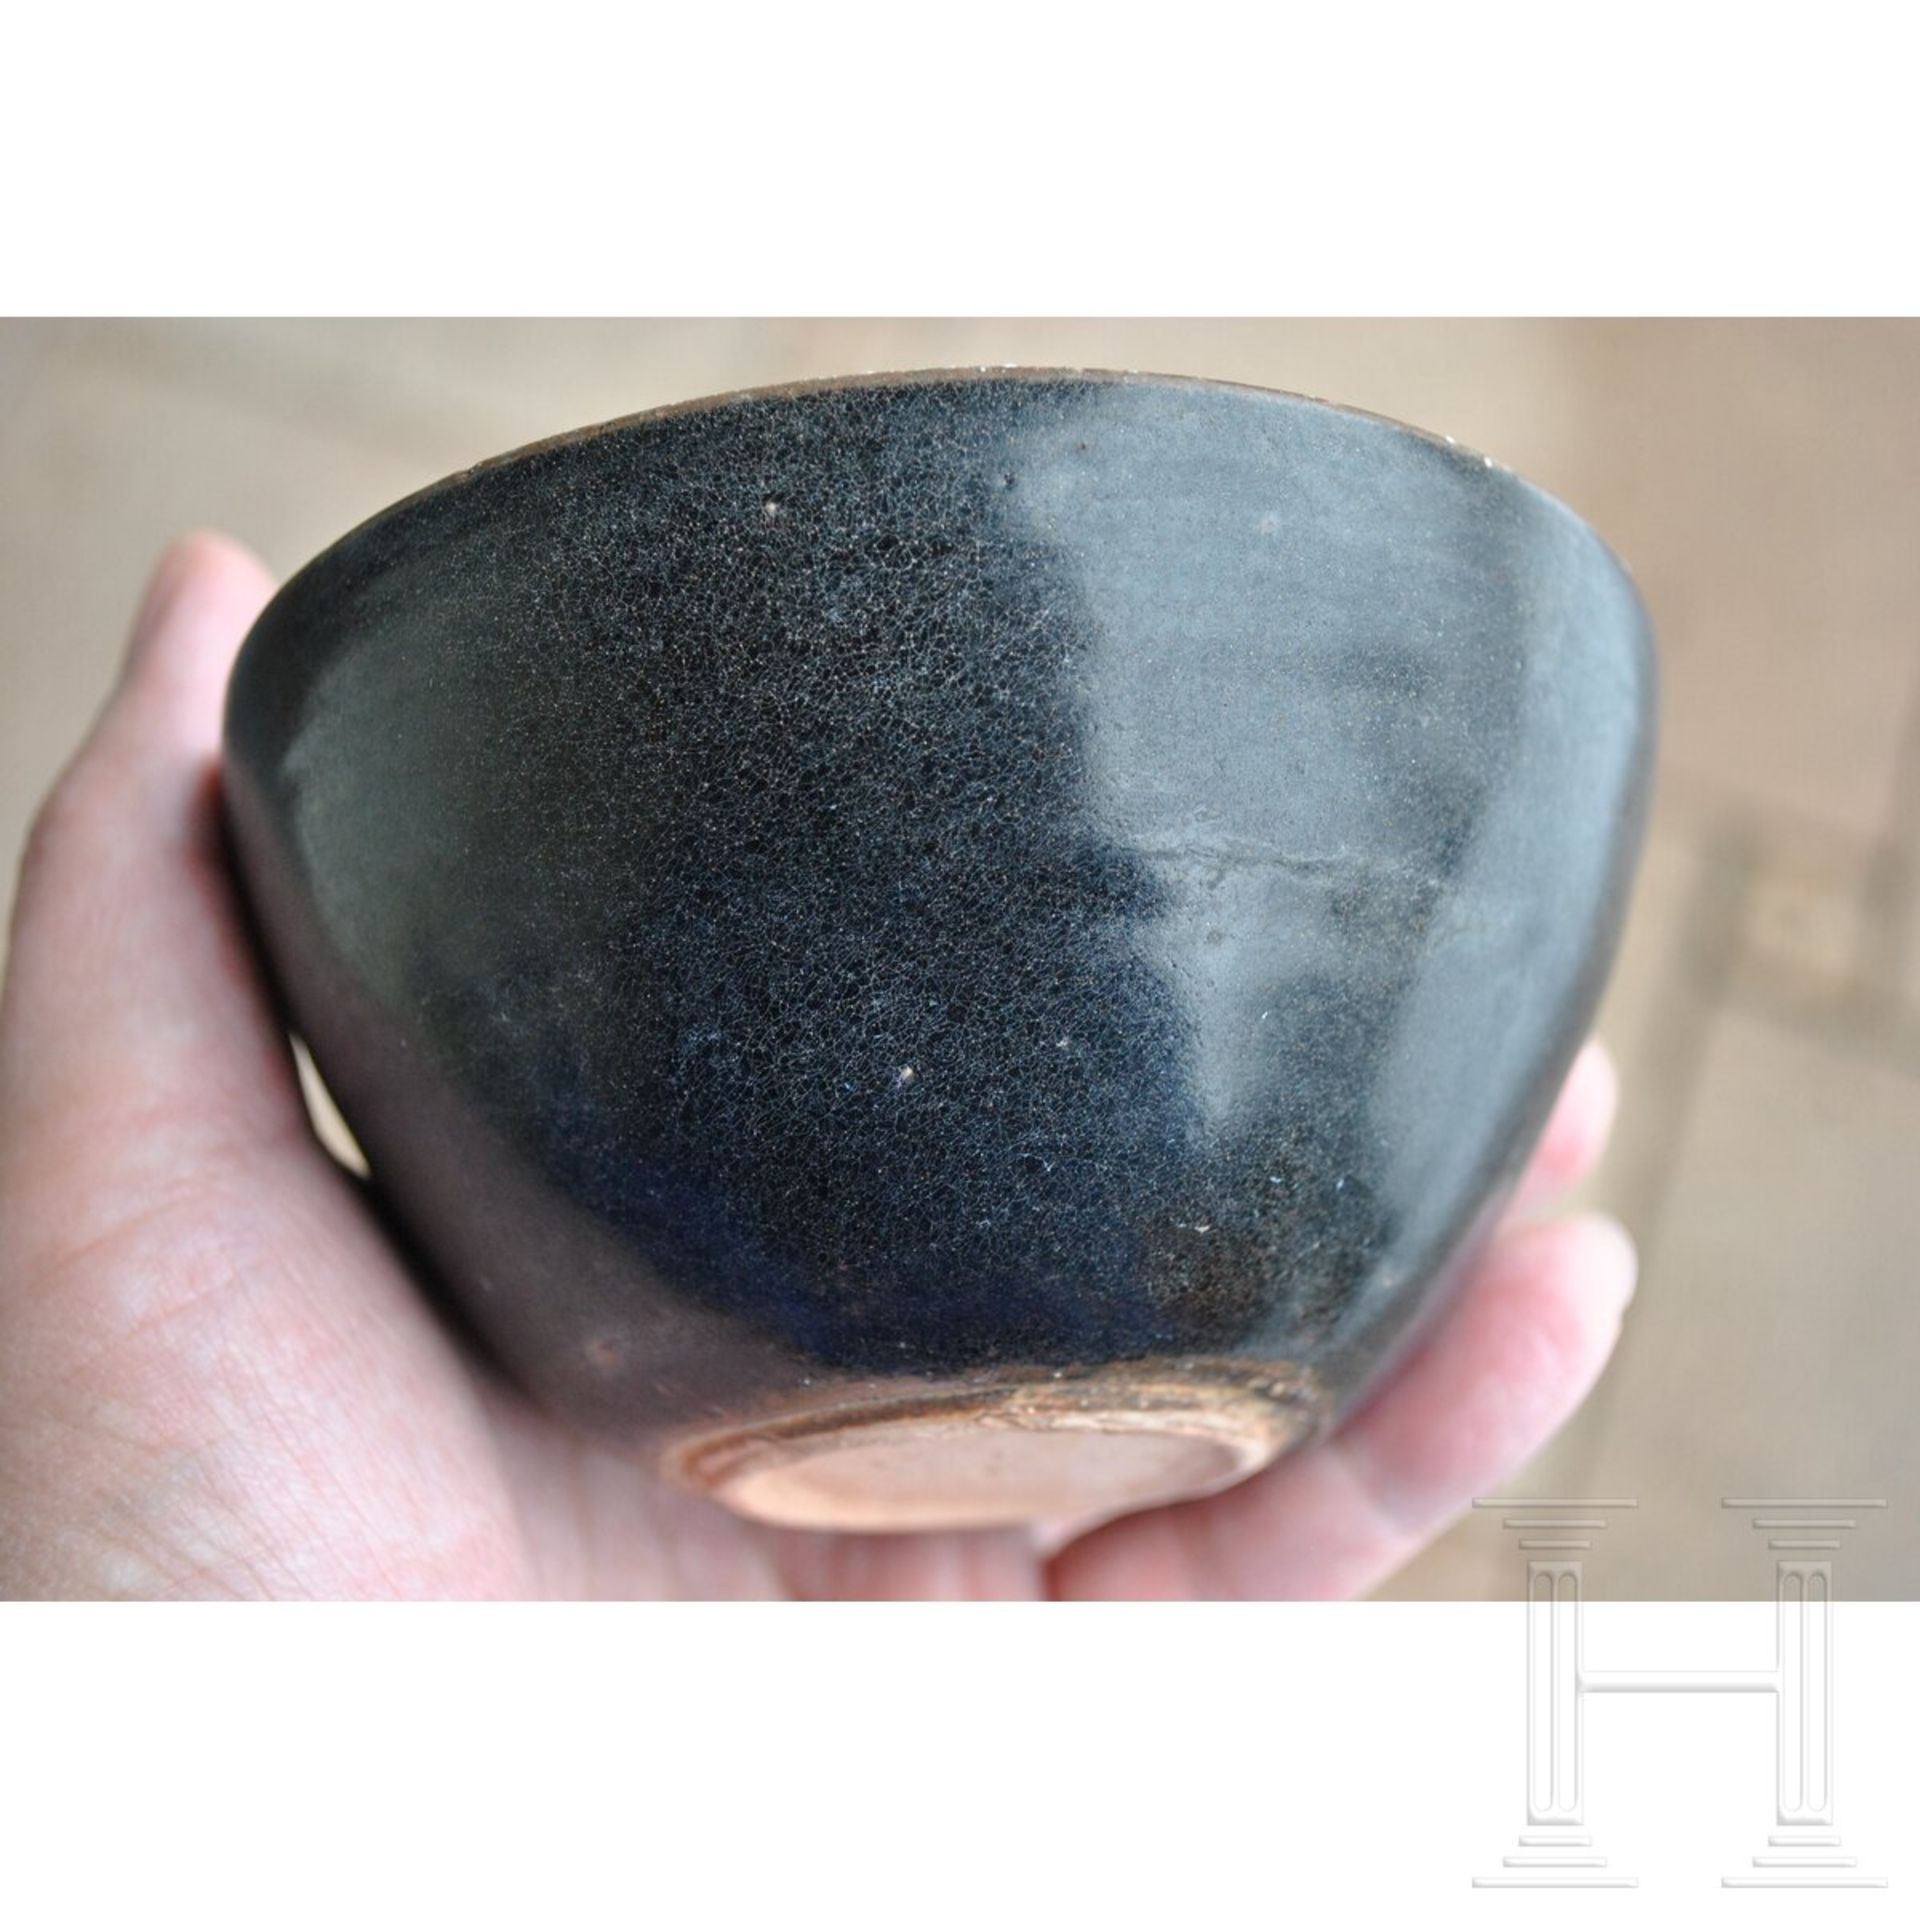 Jizhou-Teeschale, schwarz glasiert, südliche Song-Dynastie (12. - 13. Jhdt.) - Bild 10 aus 17